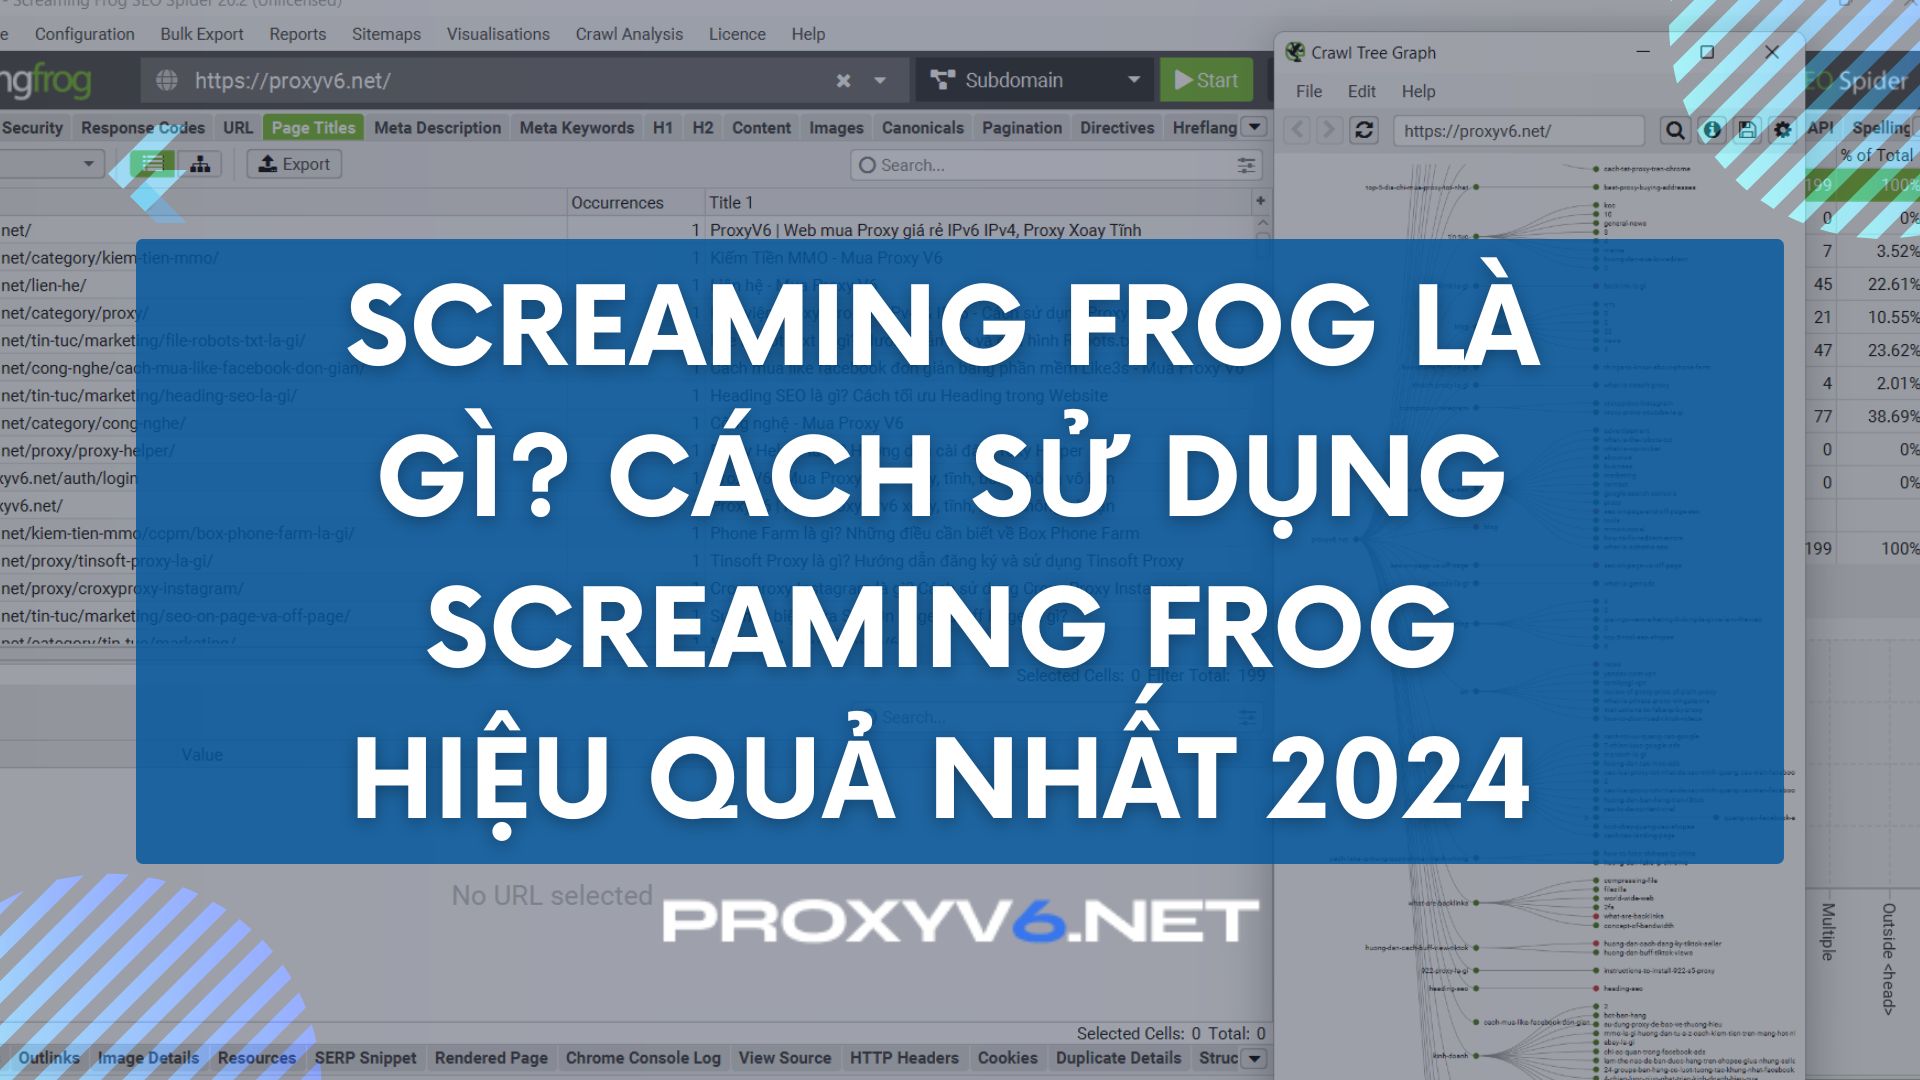 Screaming Frog là gì? Cách sử dụng Screaming Frog hiệu quả nhất 2024